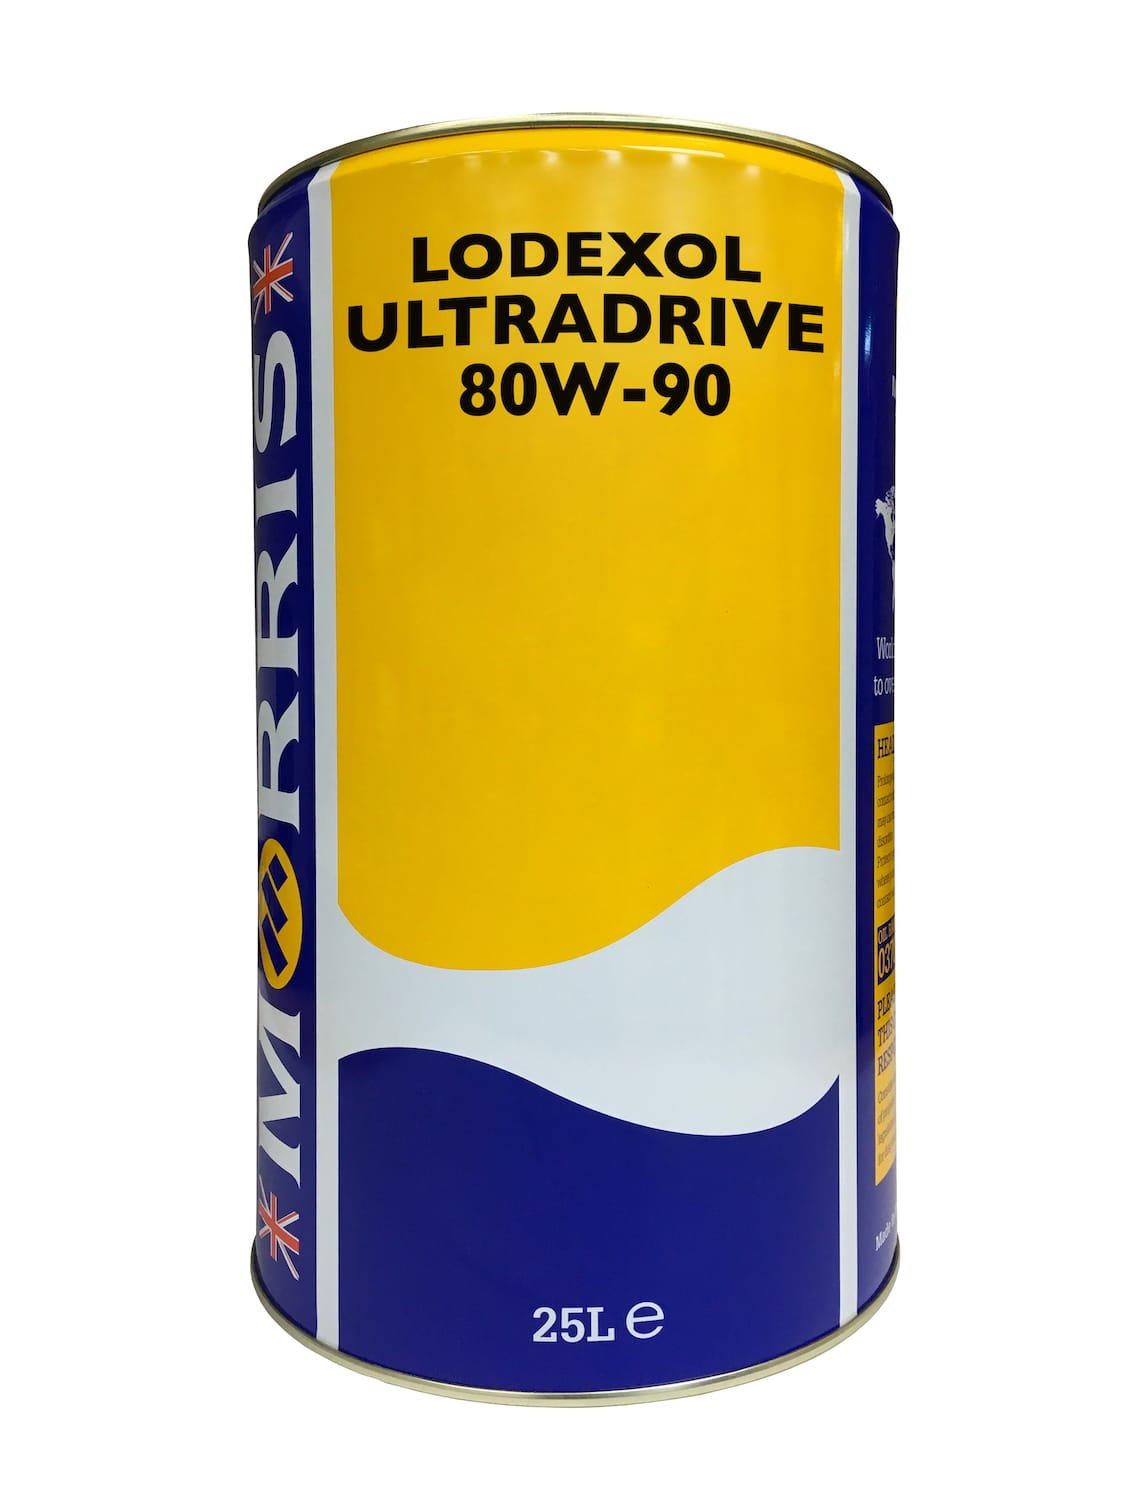 Lodexol Ultradrive 80W-90